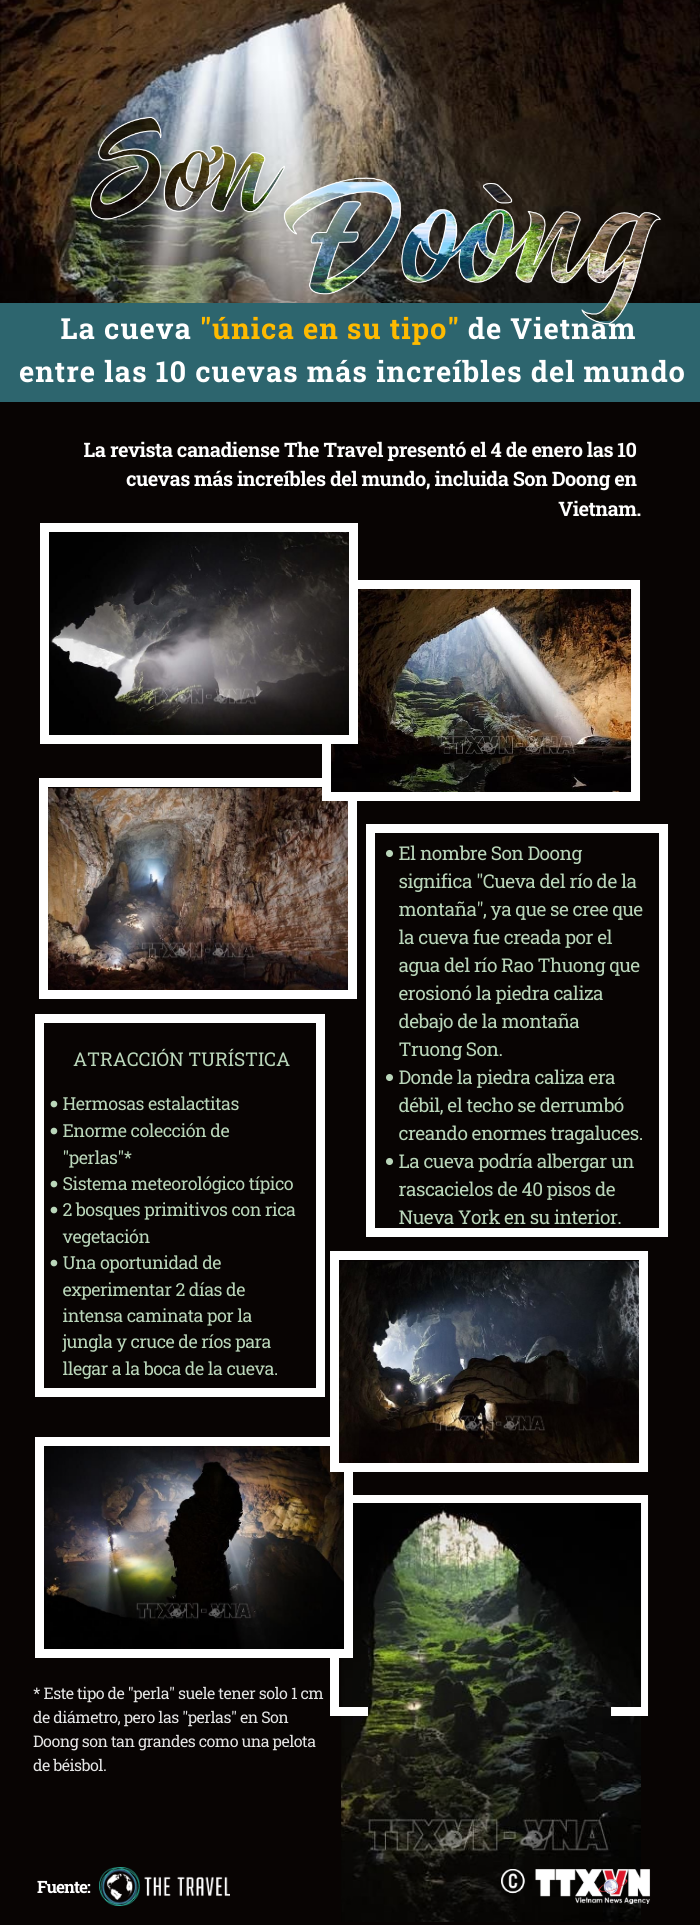 Son Doong, cueva "unica en su tipo" de Vietnam entre las 10 mas increibles del mundo hinh anh 1